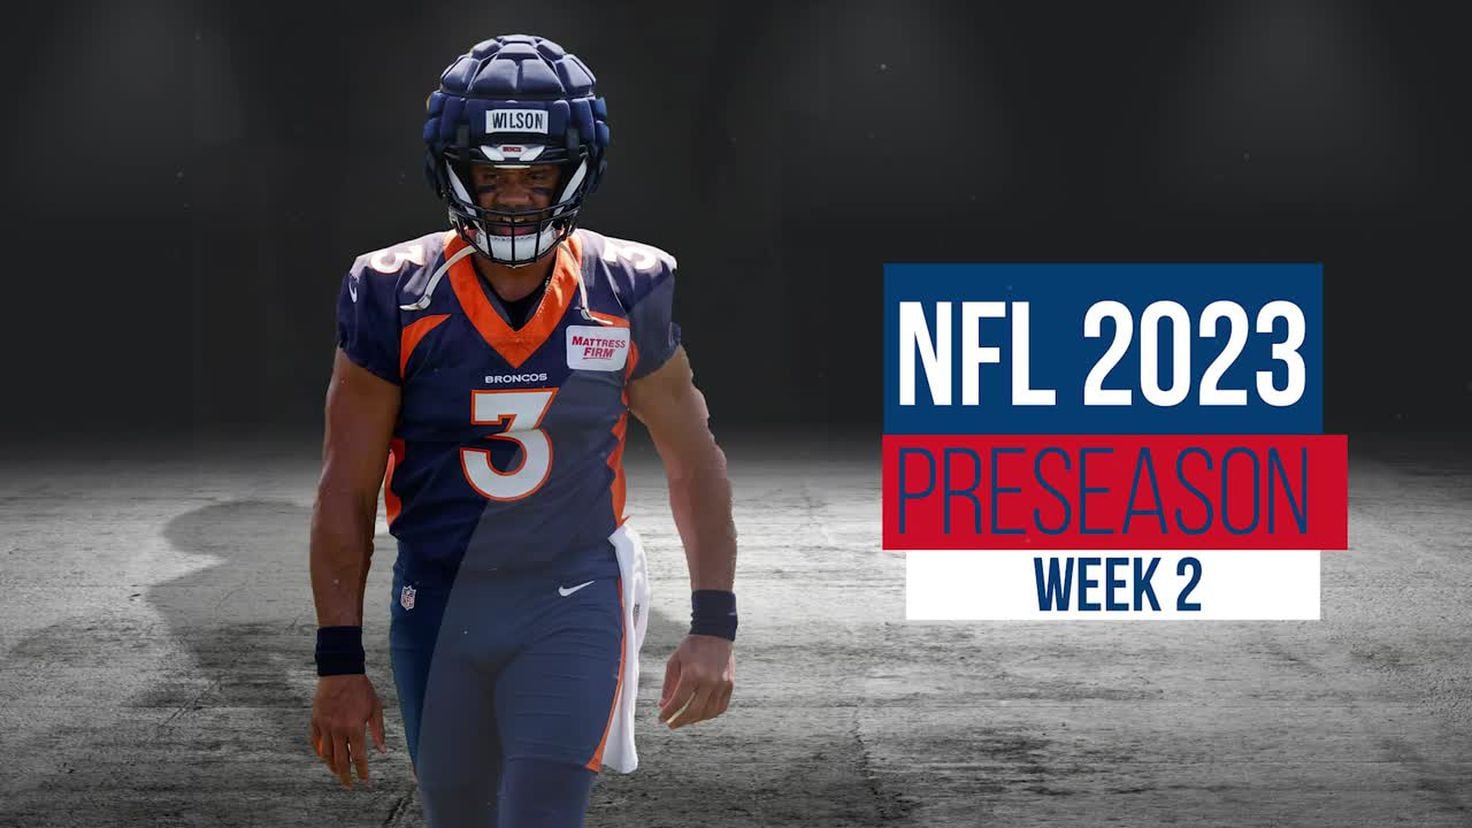 NFL Preseason Schedule Week 2 - AS USA